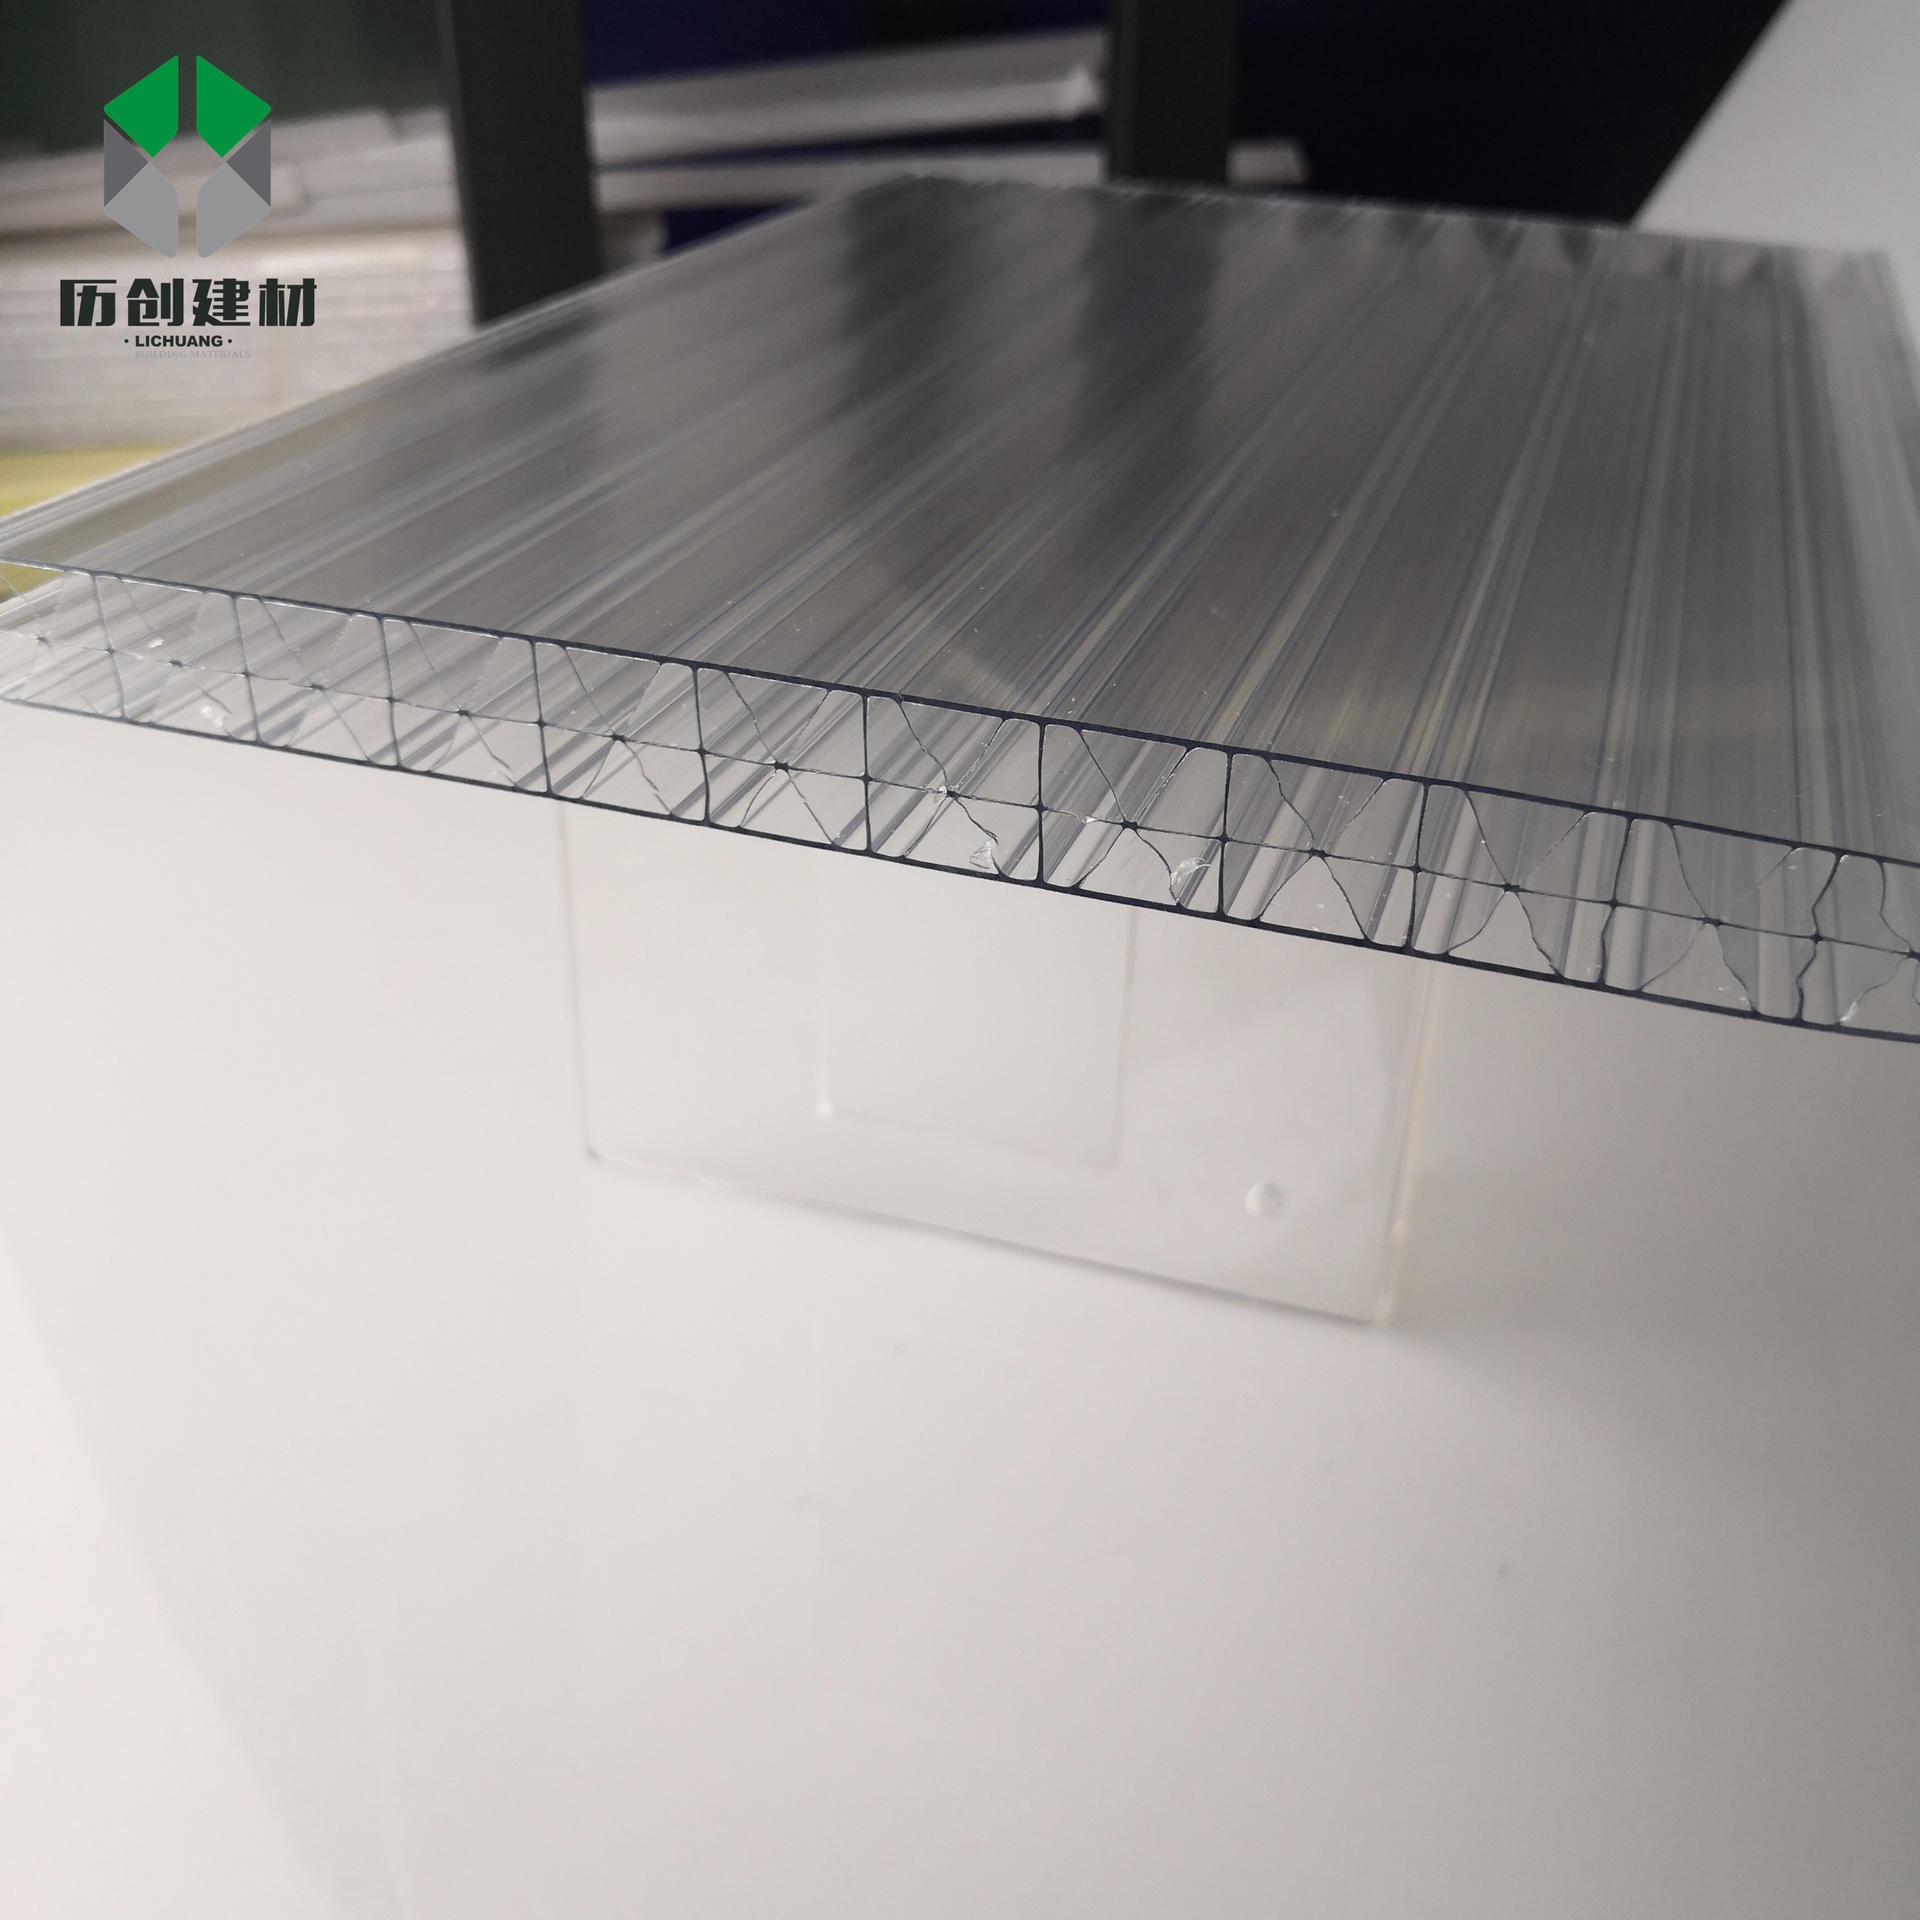 广东历创厂家批发供应10mm透明草绿两层阳光板米字格pc板材顶棚车棚过道雨棚PC板